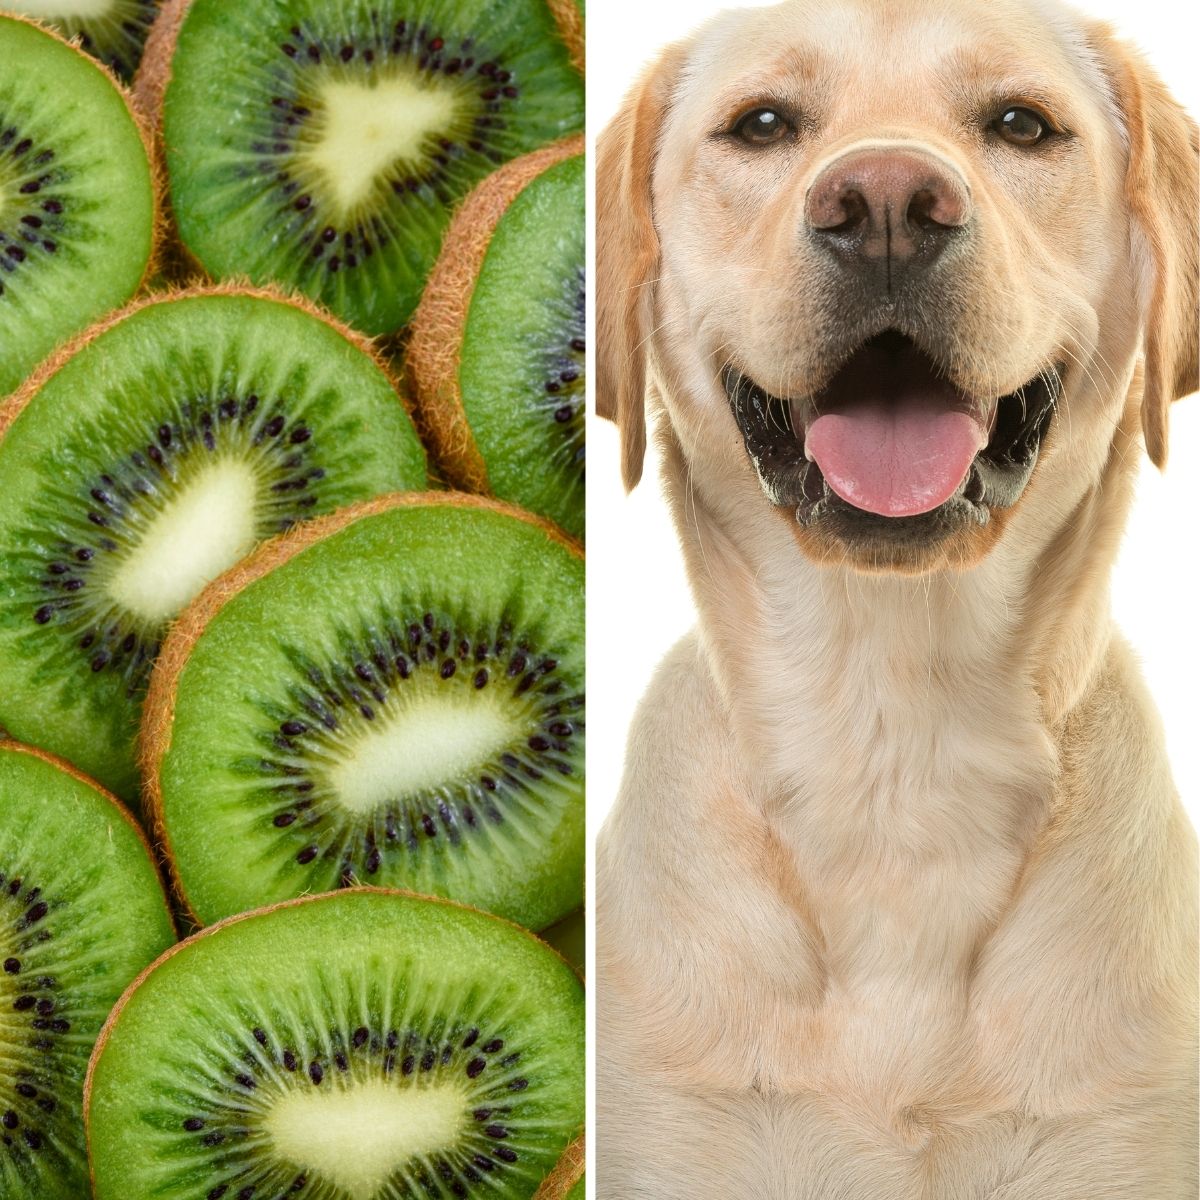 Square split image showing a dog and kiwi fruit.